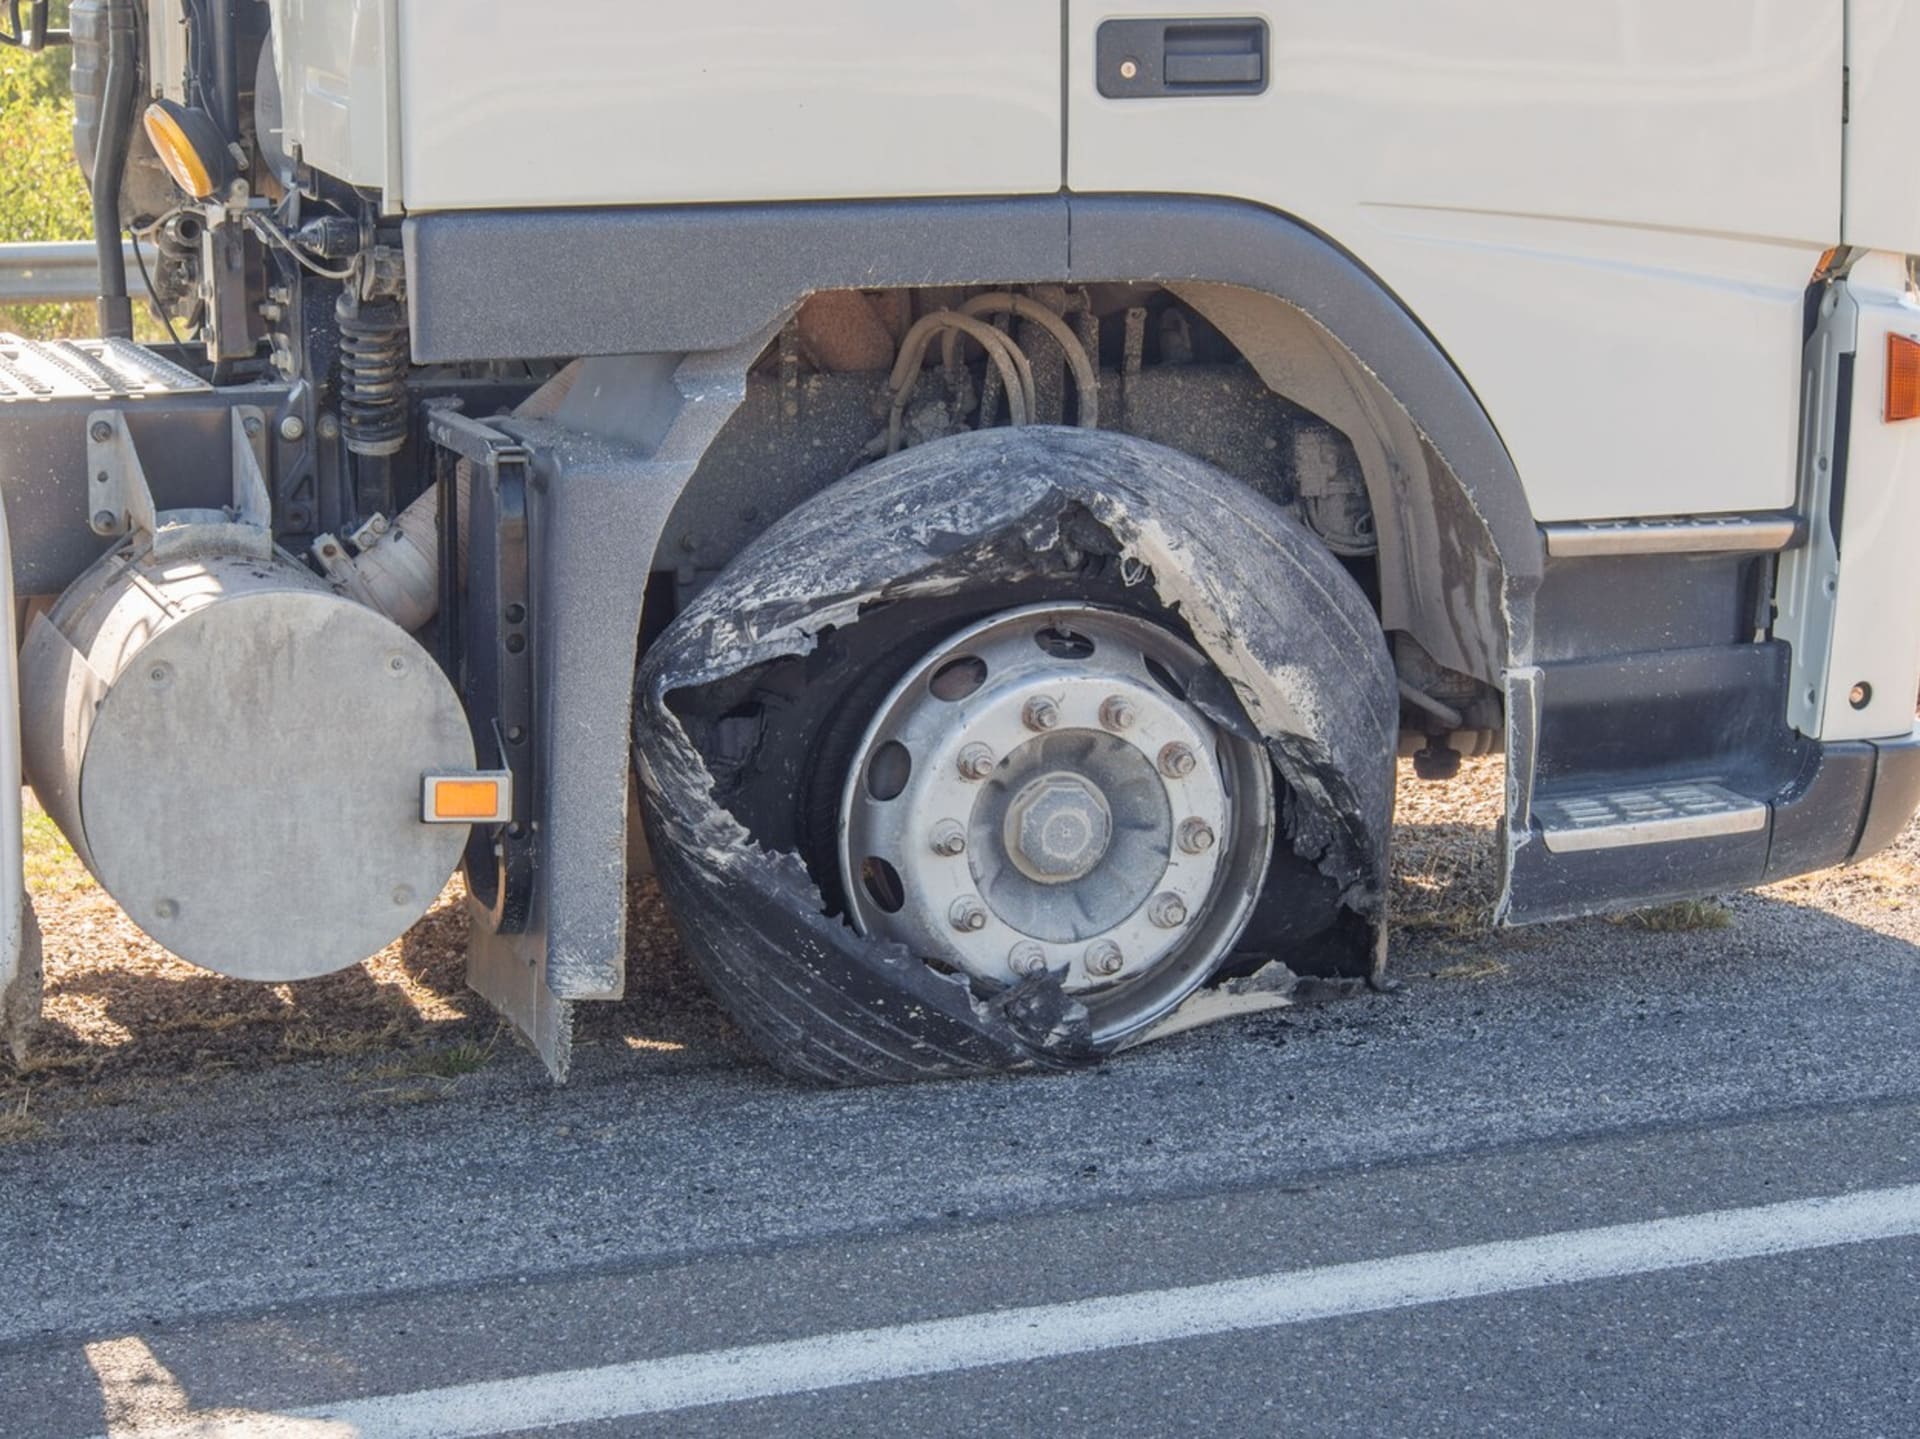 Tlak v pneumatikách nákladních automobilů může dosahovat tlaku až atm/barů.